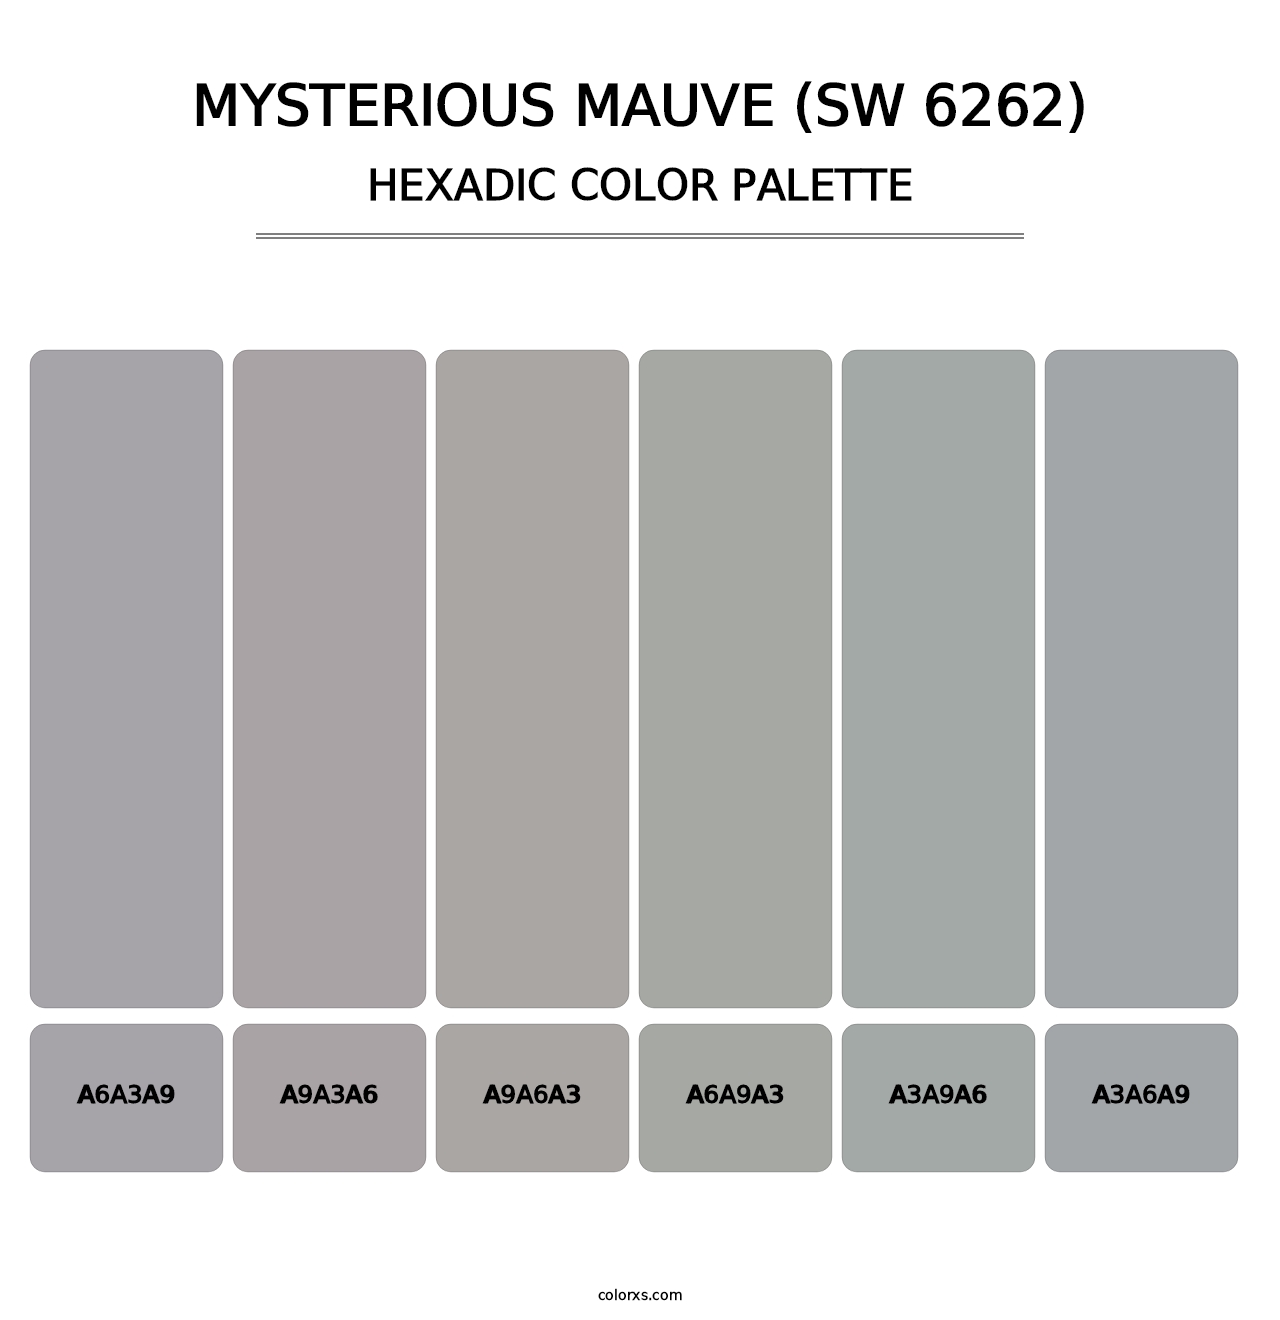 Mysterious Mauve (SW 6262) - Hexadic Color Palette